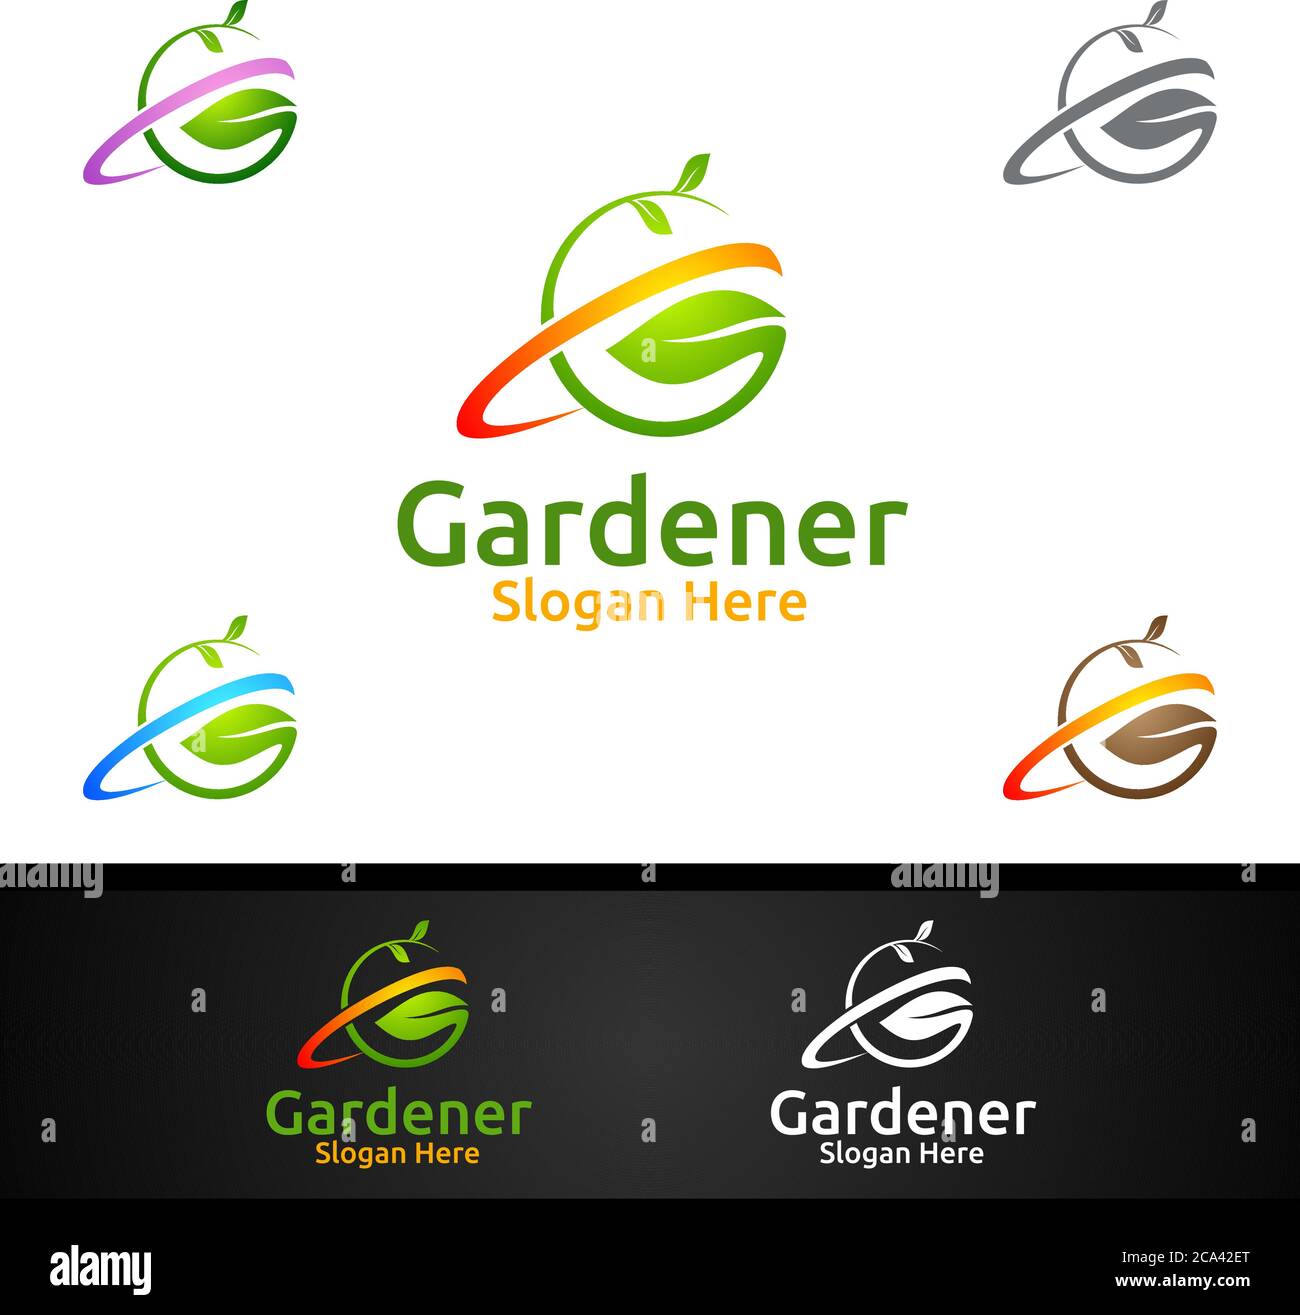 Gärtner Pflege Logo mit Green Garden Umwelt oder Botanische Landwirtschaft Design Stock Vektor